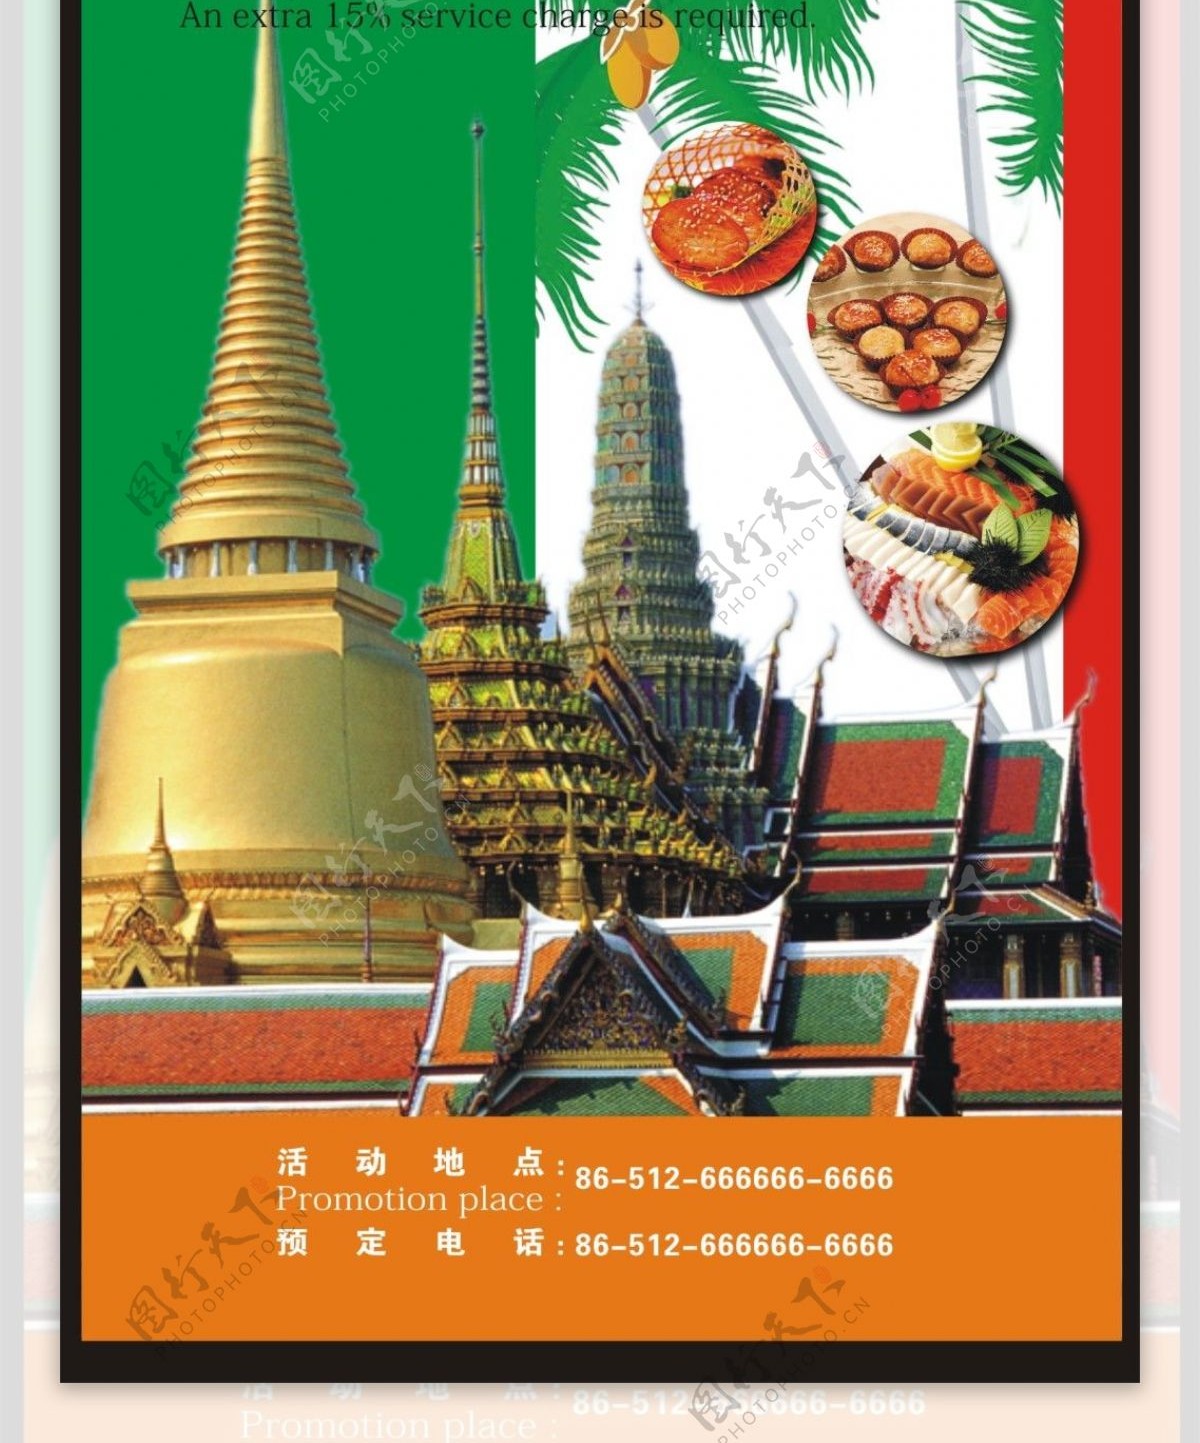 东南亚美食节海报